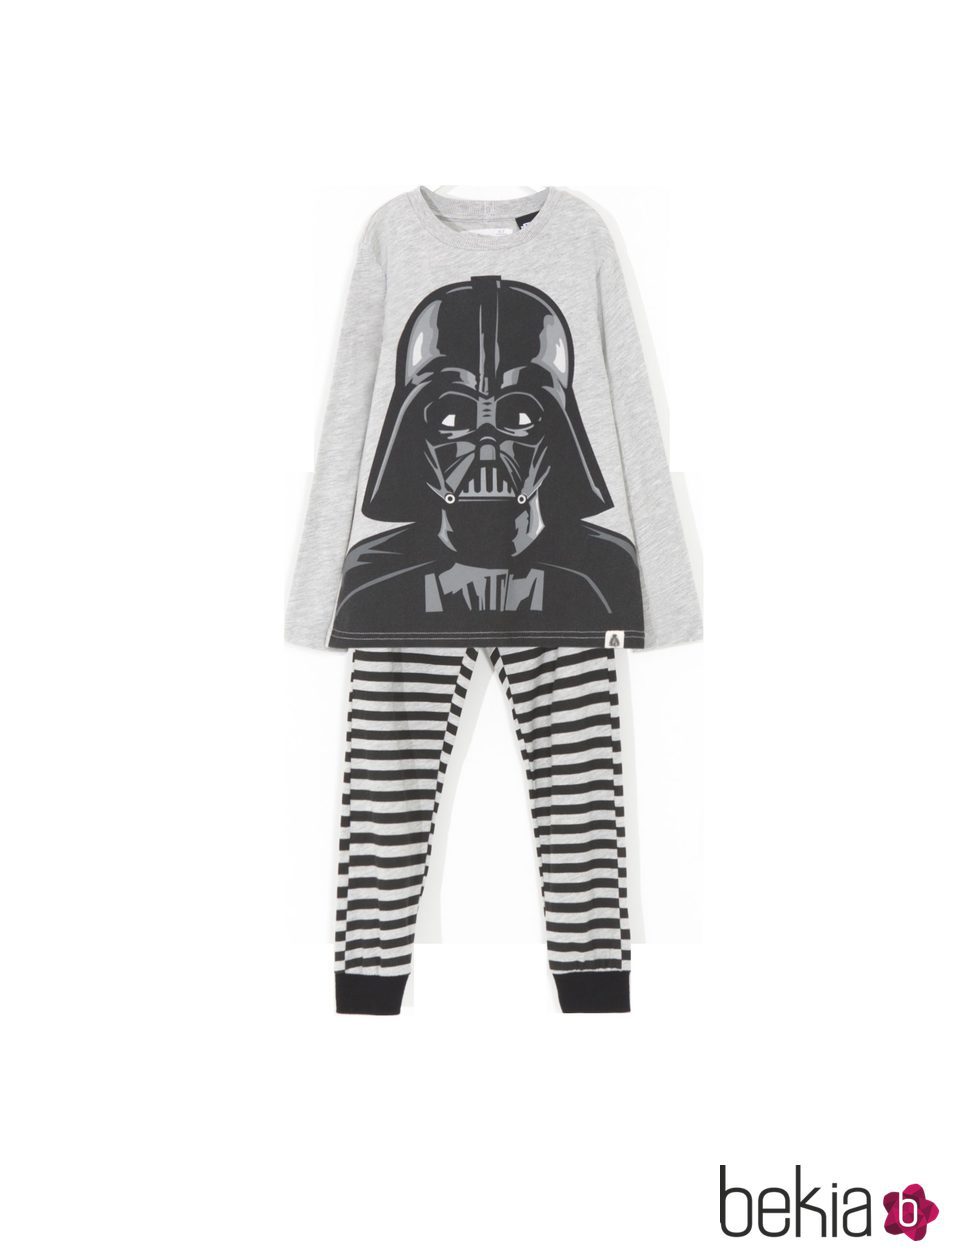 Pijama con personaje Darth Vader y leggins a rayas de 'Star Wars' para Lefties